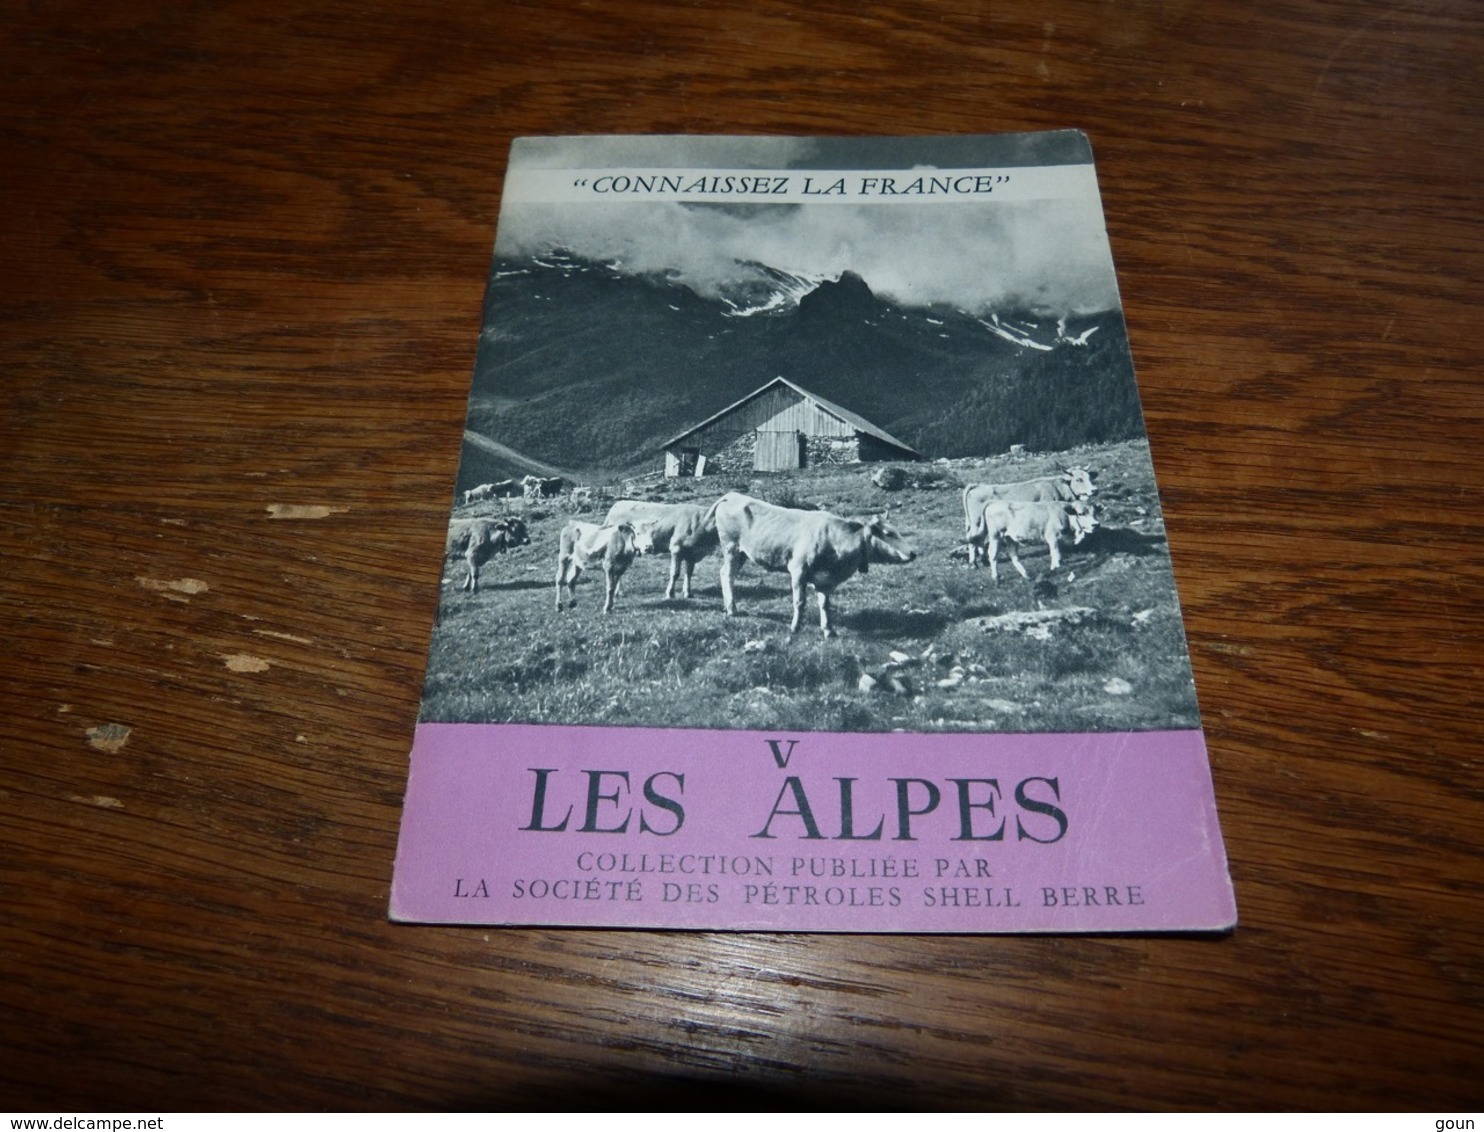 Connaissez La France - Les Alpes 16pages 12x16cm Publication Shell - Pays Basque